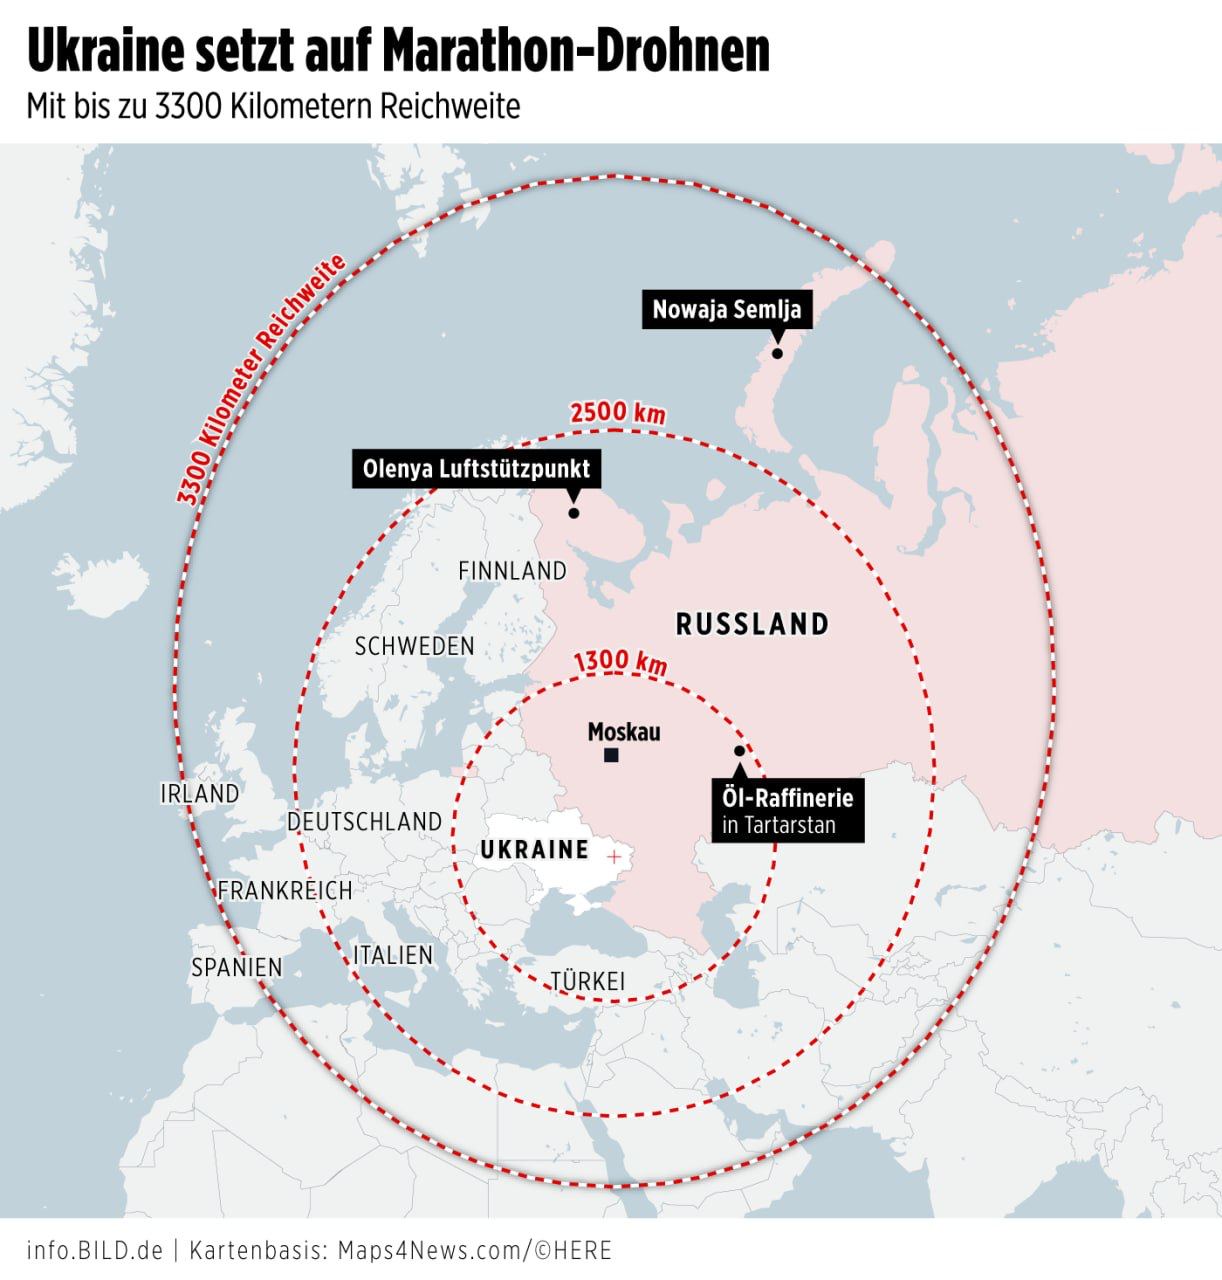 BILD: Україна цього року зможе атакувати Урал та Заполяря безпілотниками з далекобійністю 2000 км і більше